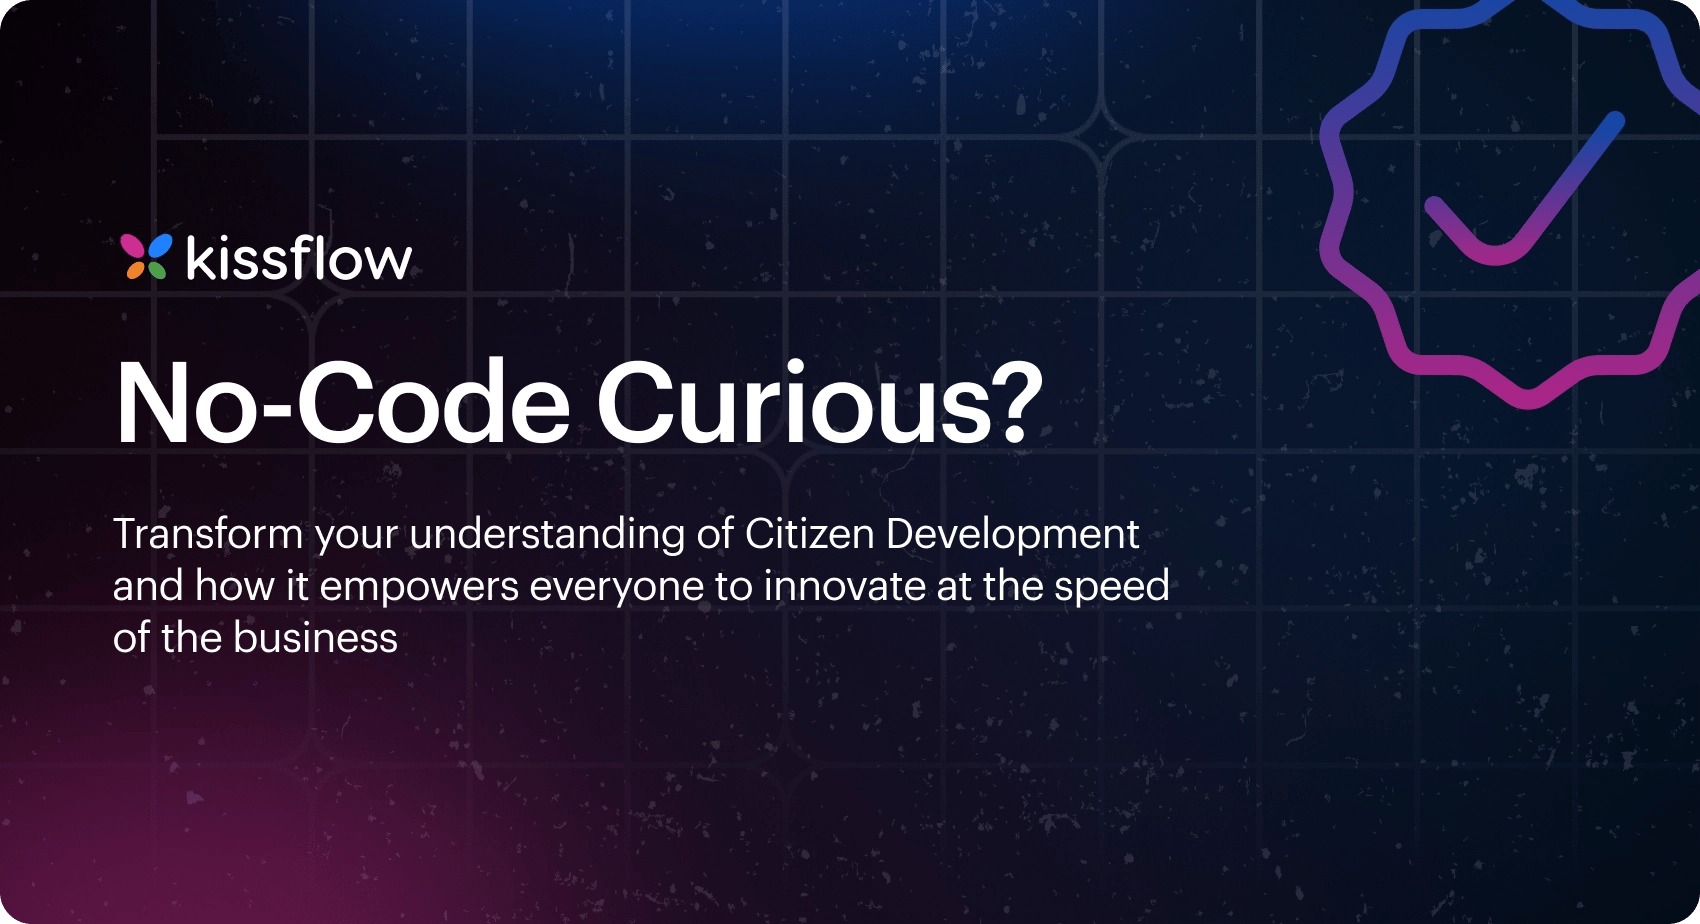 No-code curious